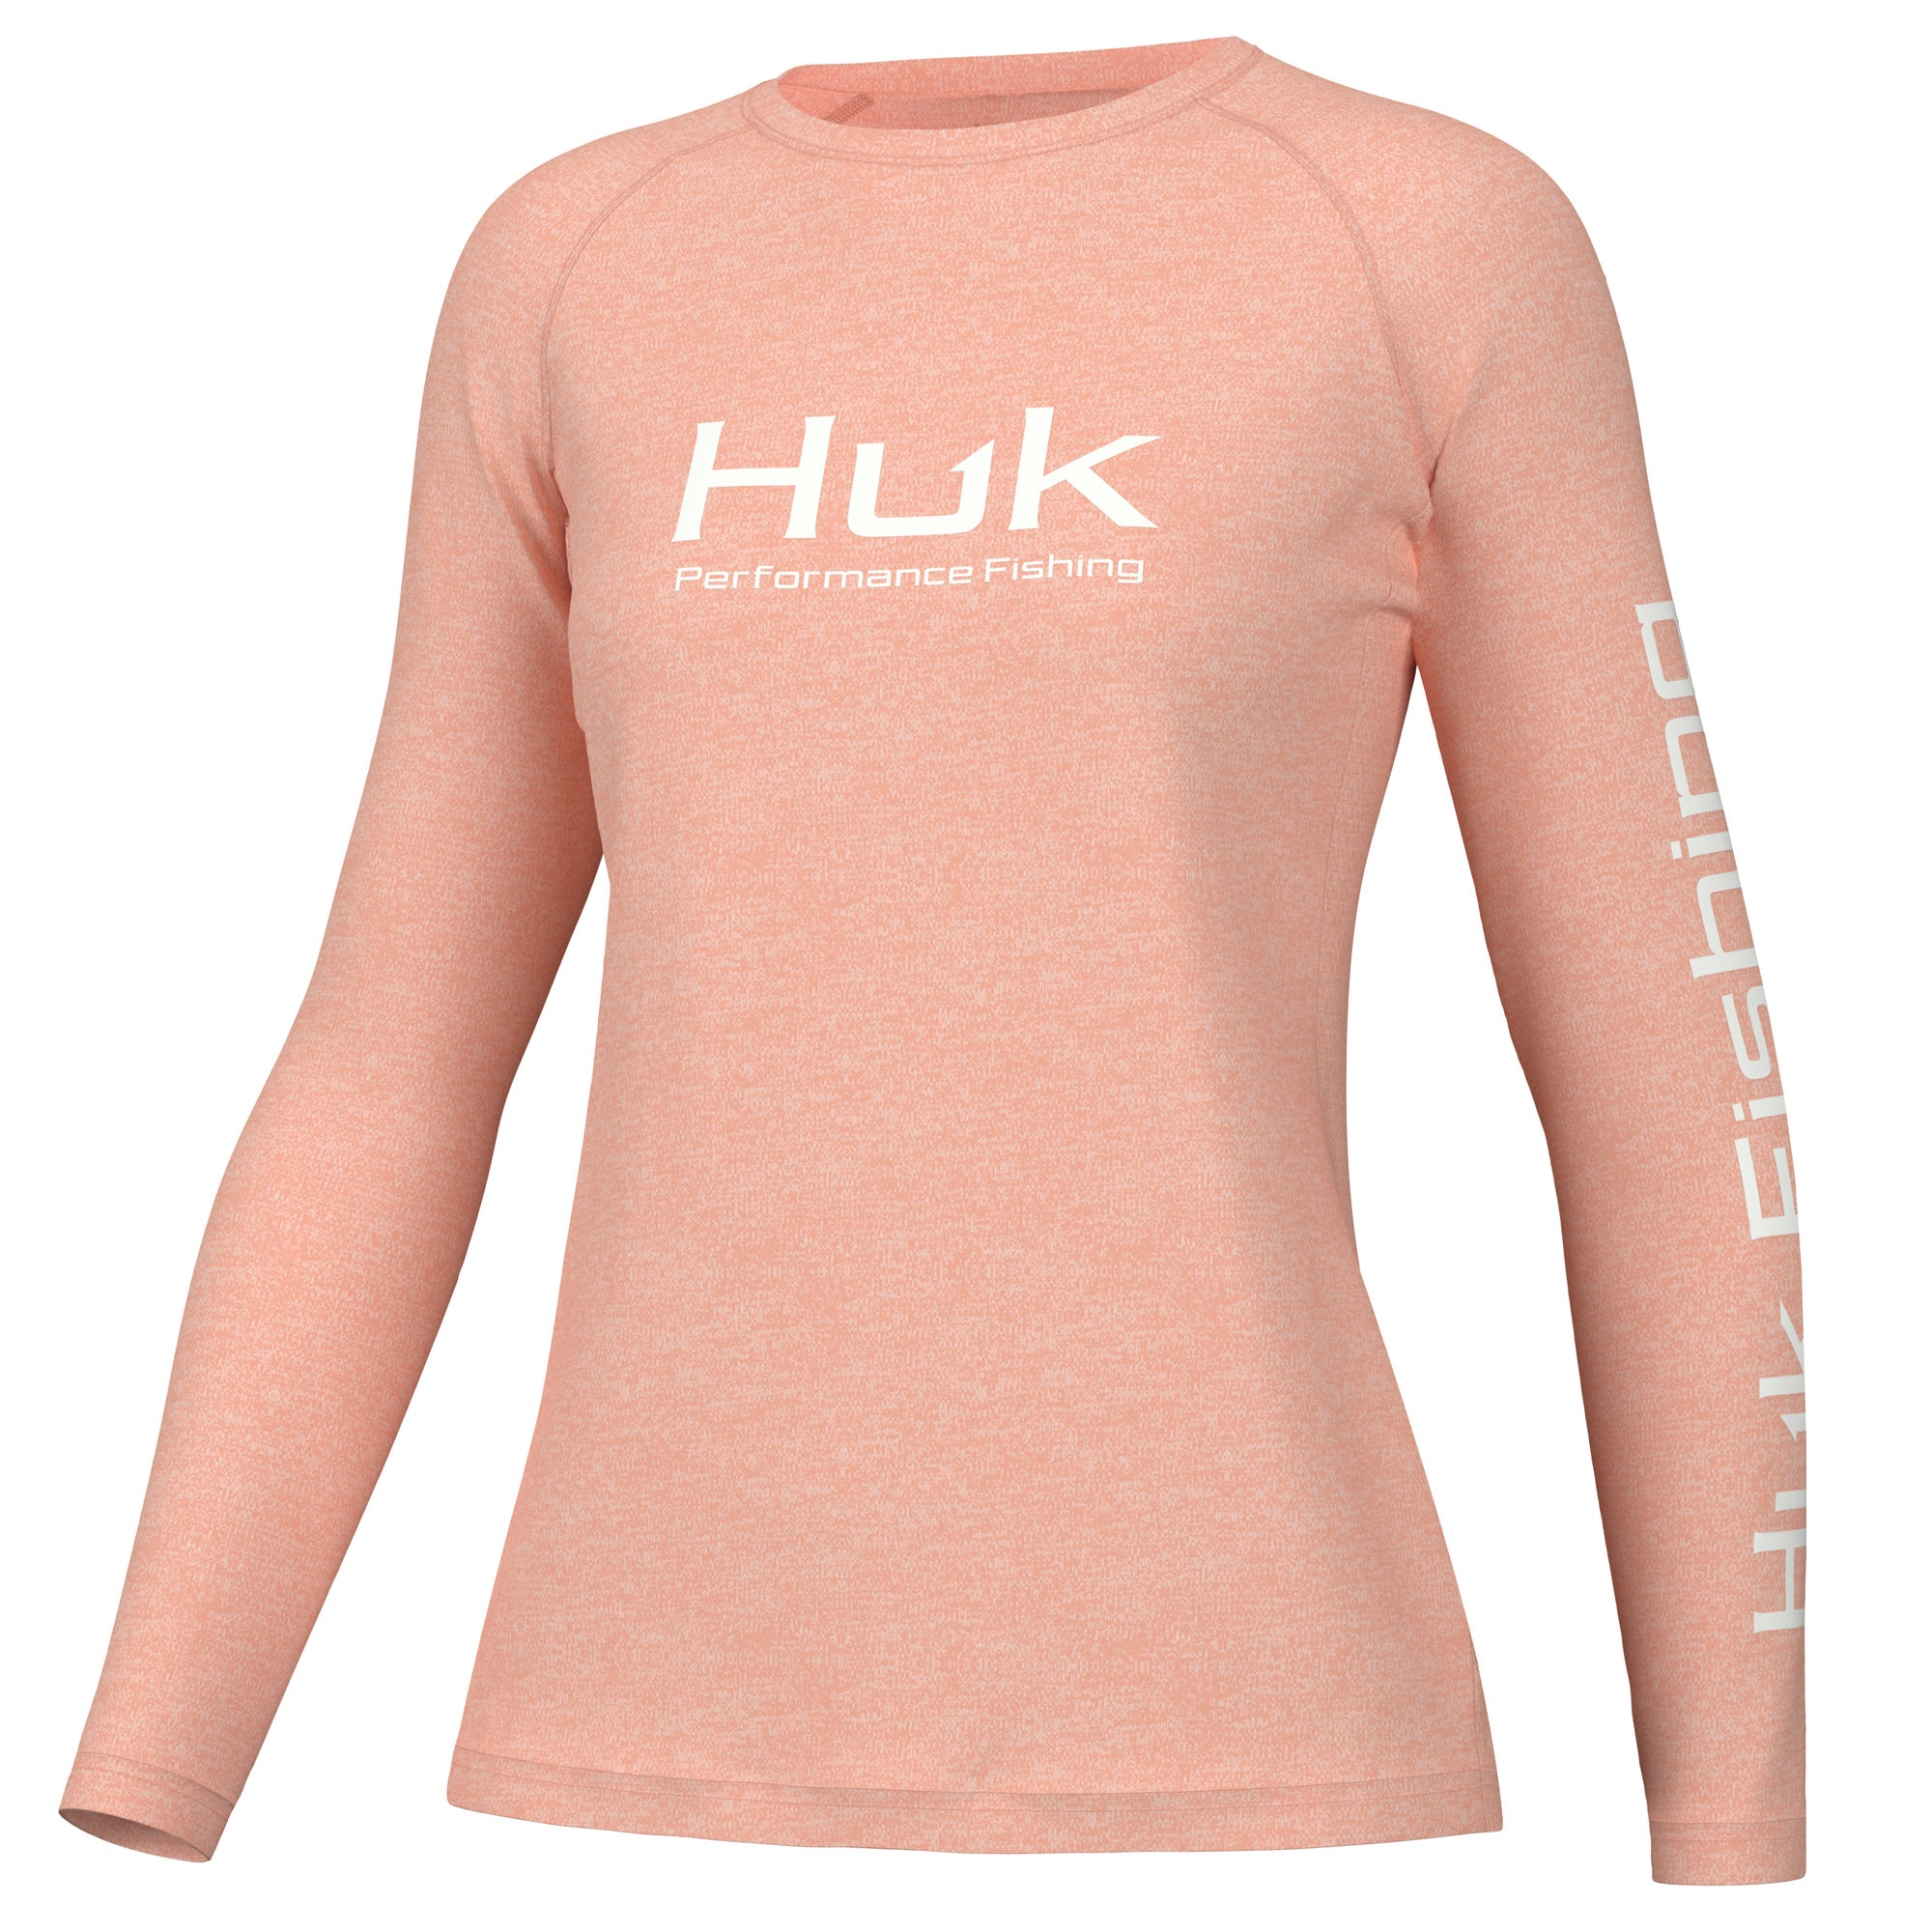 Huk Fishing Long Sleeve Shirt Women's Size M